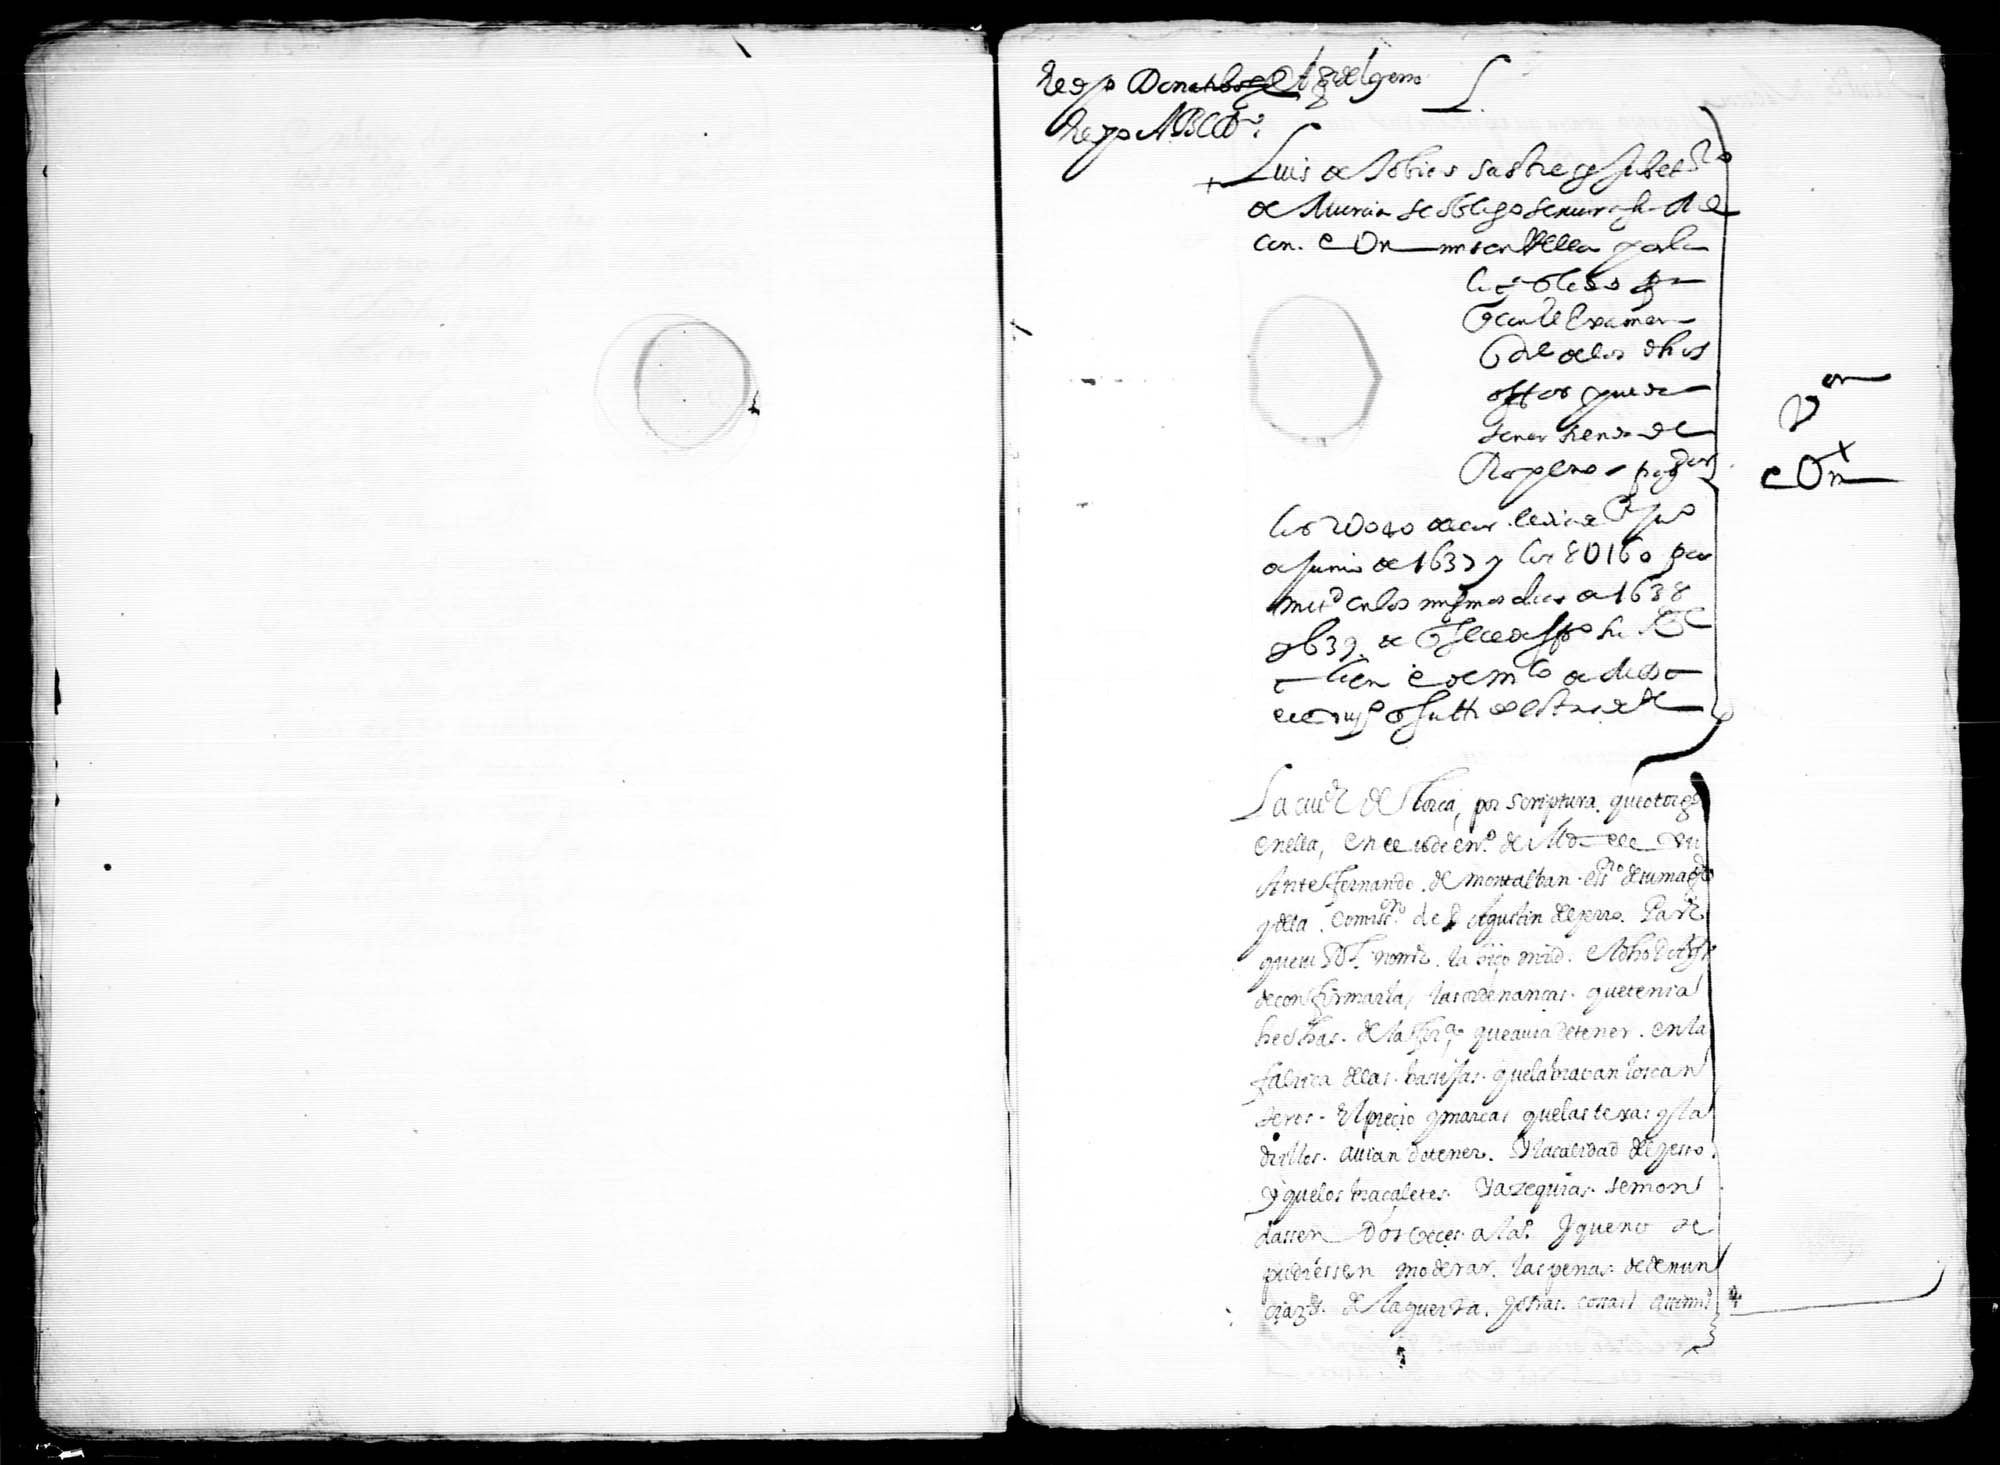 Documentación relativa al Donativo General del Obispado de Cartagena y Reino de Murcia, recuadado por don Agustín del Yerro, oidor de la Chancillería de Granada.